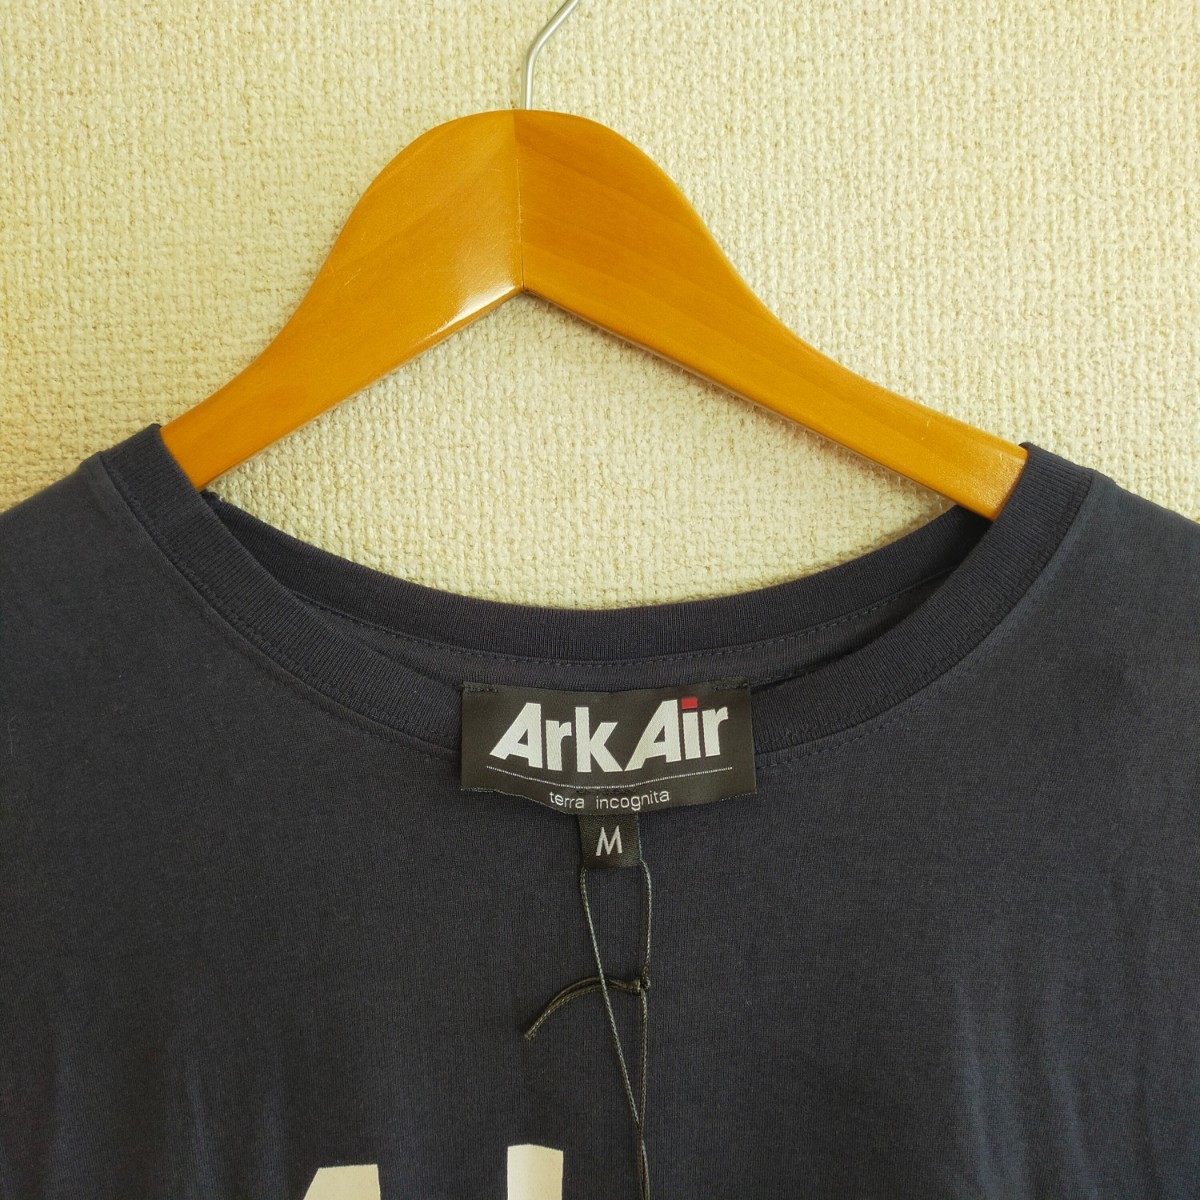 新品未使用タグ付き ARK AIR アークエアー CARGO POCKET TEE J002AA カーゴポケット Tシャツ 半袖 オーガニックコットン M ネイビー(紺)の画像4